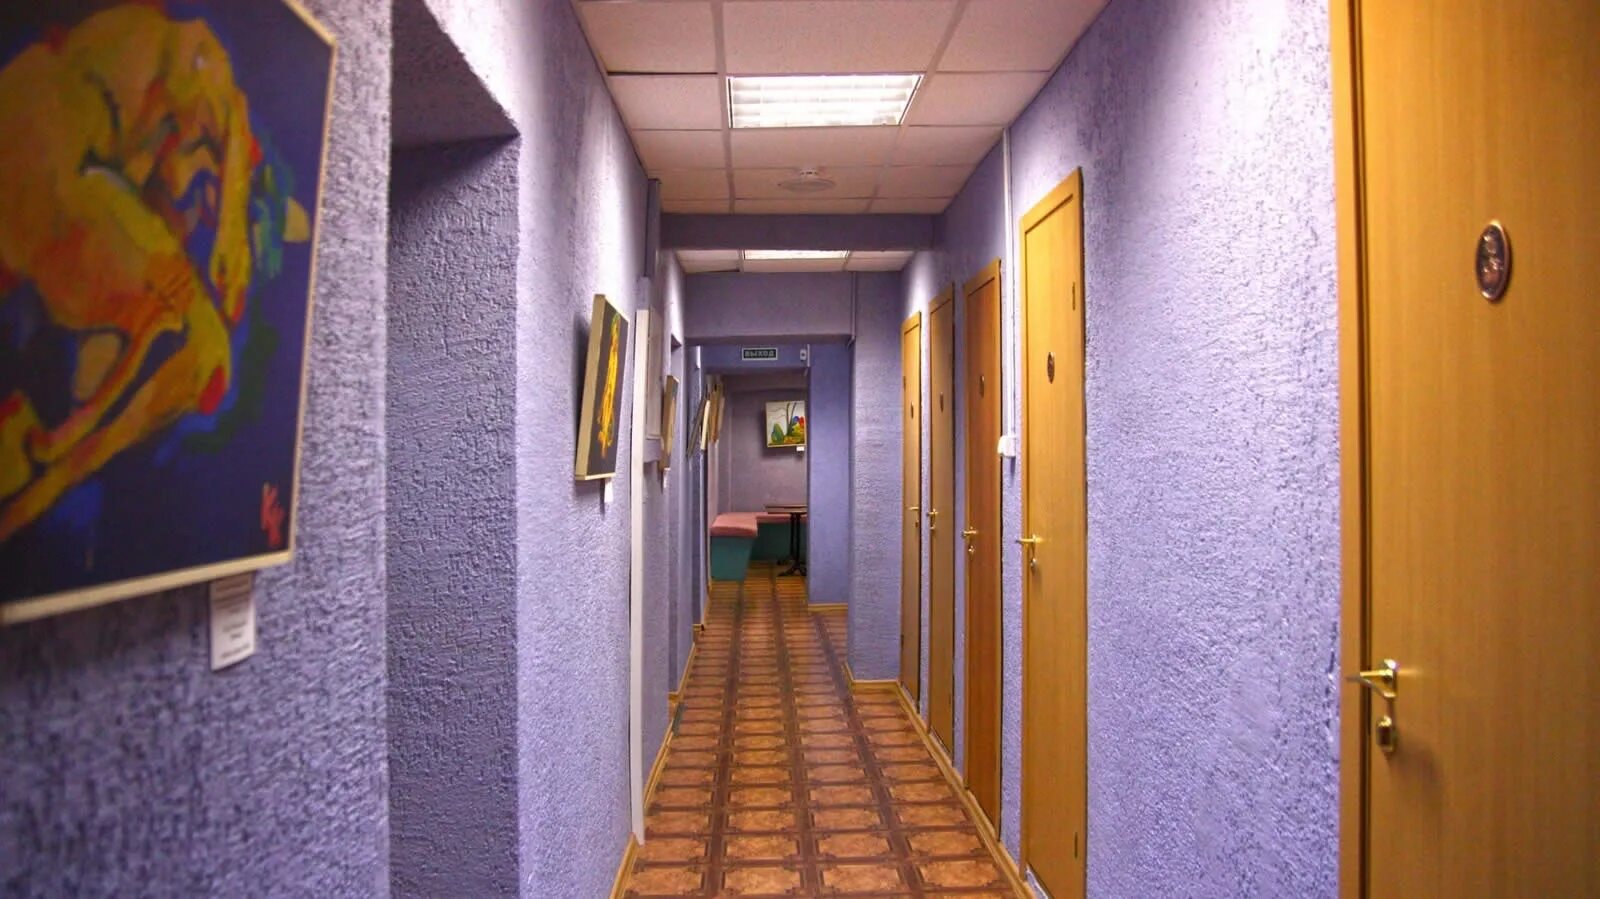 Коридор общежития. Интерьер коридора в общежитии. Коридор (помещение). Коридор студенческого общежития. Стены общежития